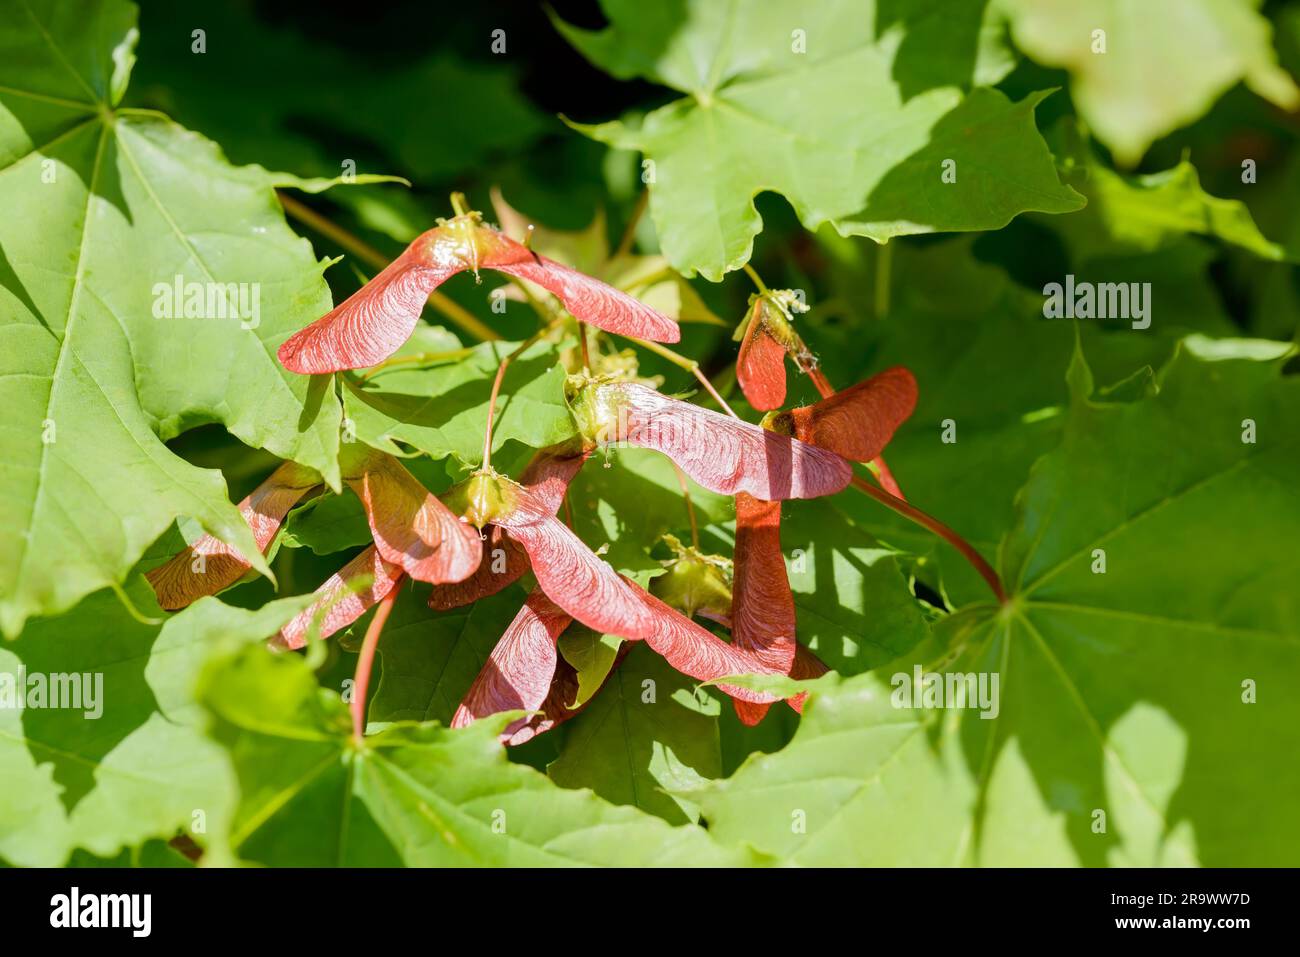 Dettaglio ravvicinato del circinatum dell'acero (Acer), samara rossa, su uno sfondo di foglie verdi, illuminato da un forte sole primaverile Foto Stock